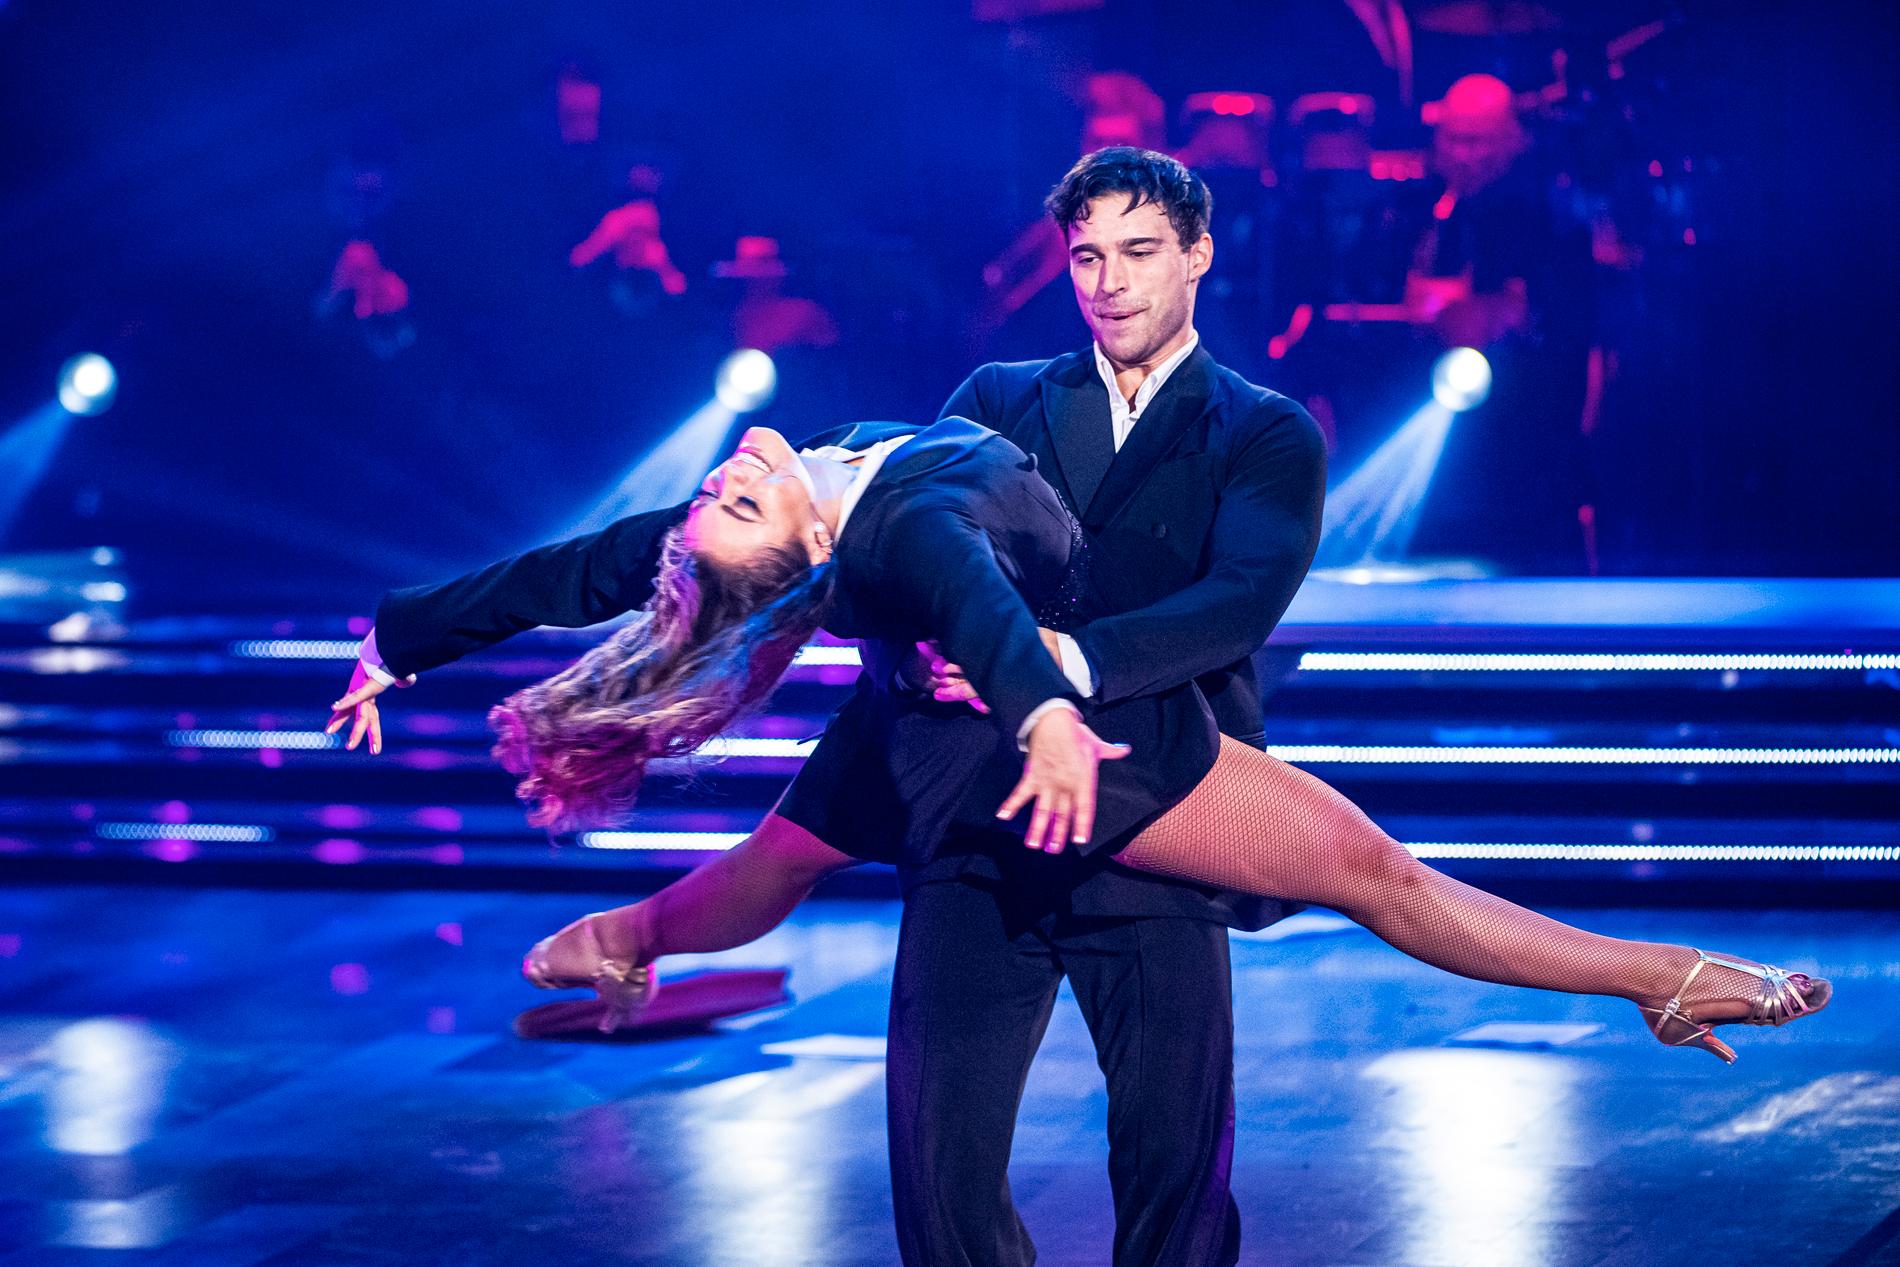 Eric & Katja ska dansa tango till ”Vi pratar inte om Bruno” från ”Encanto”.